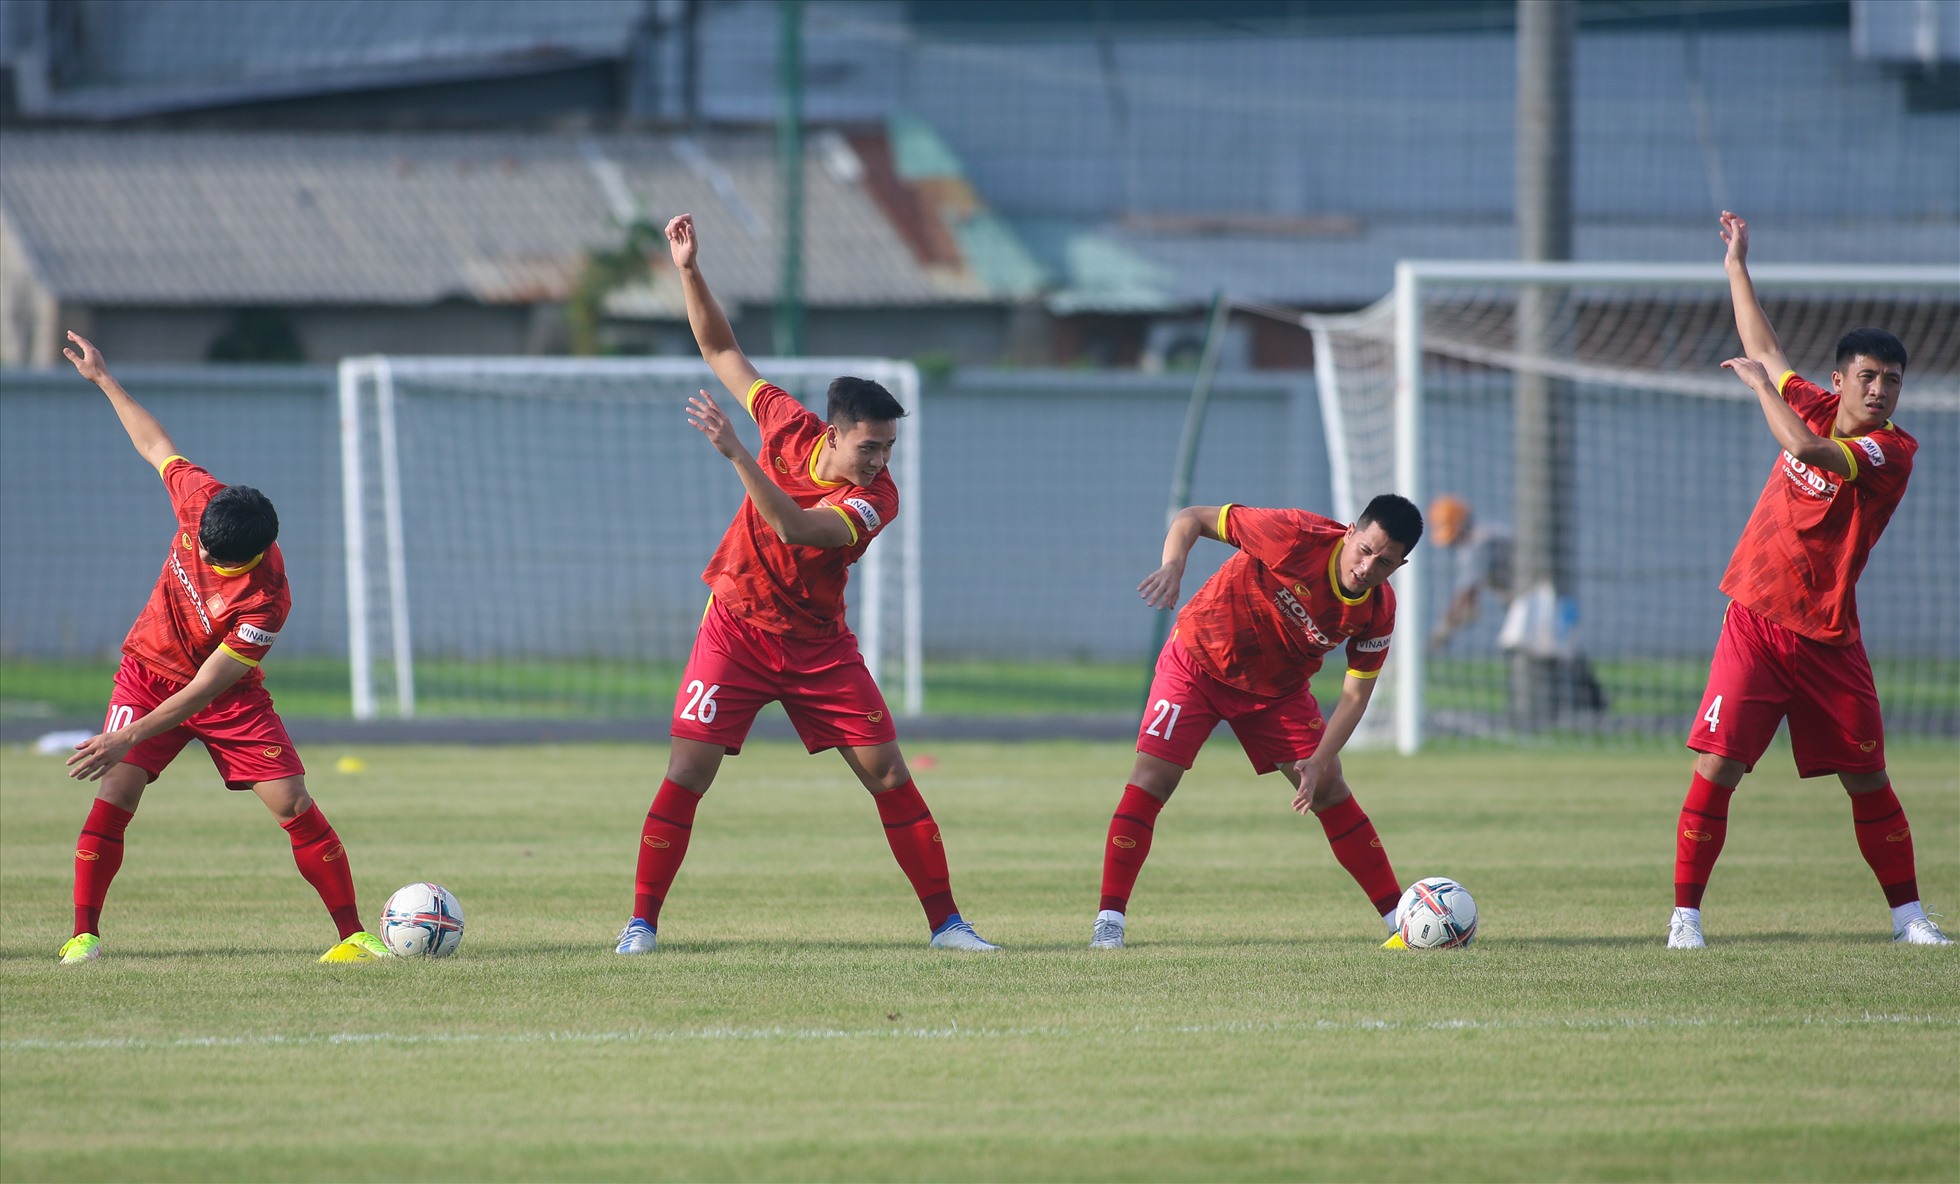 Theo lịch, tuyển Việt Nam sẽ lần lượt đối đầu Singapore (19h, ngày 21.9) và Ấn Độ (19h, ngày 27.9) trên sân vận động Thống Nhất.